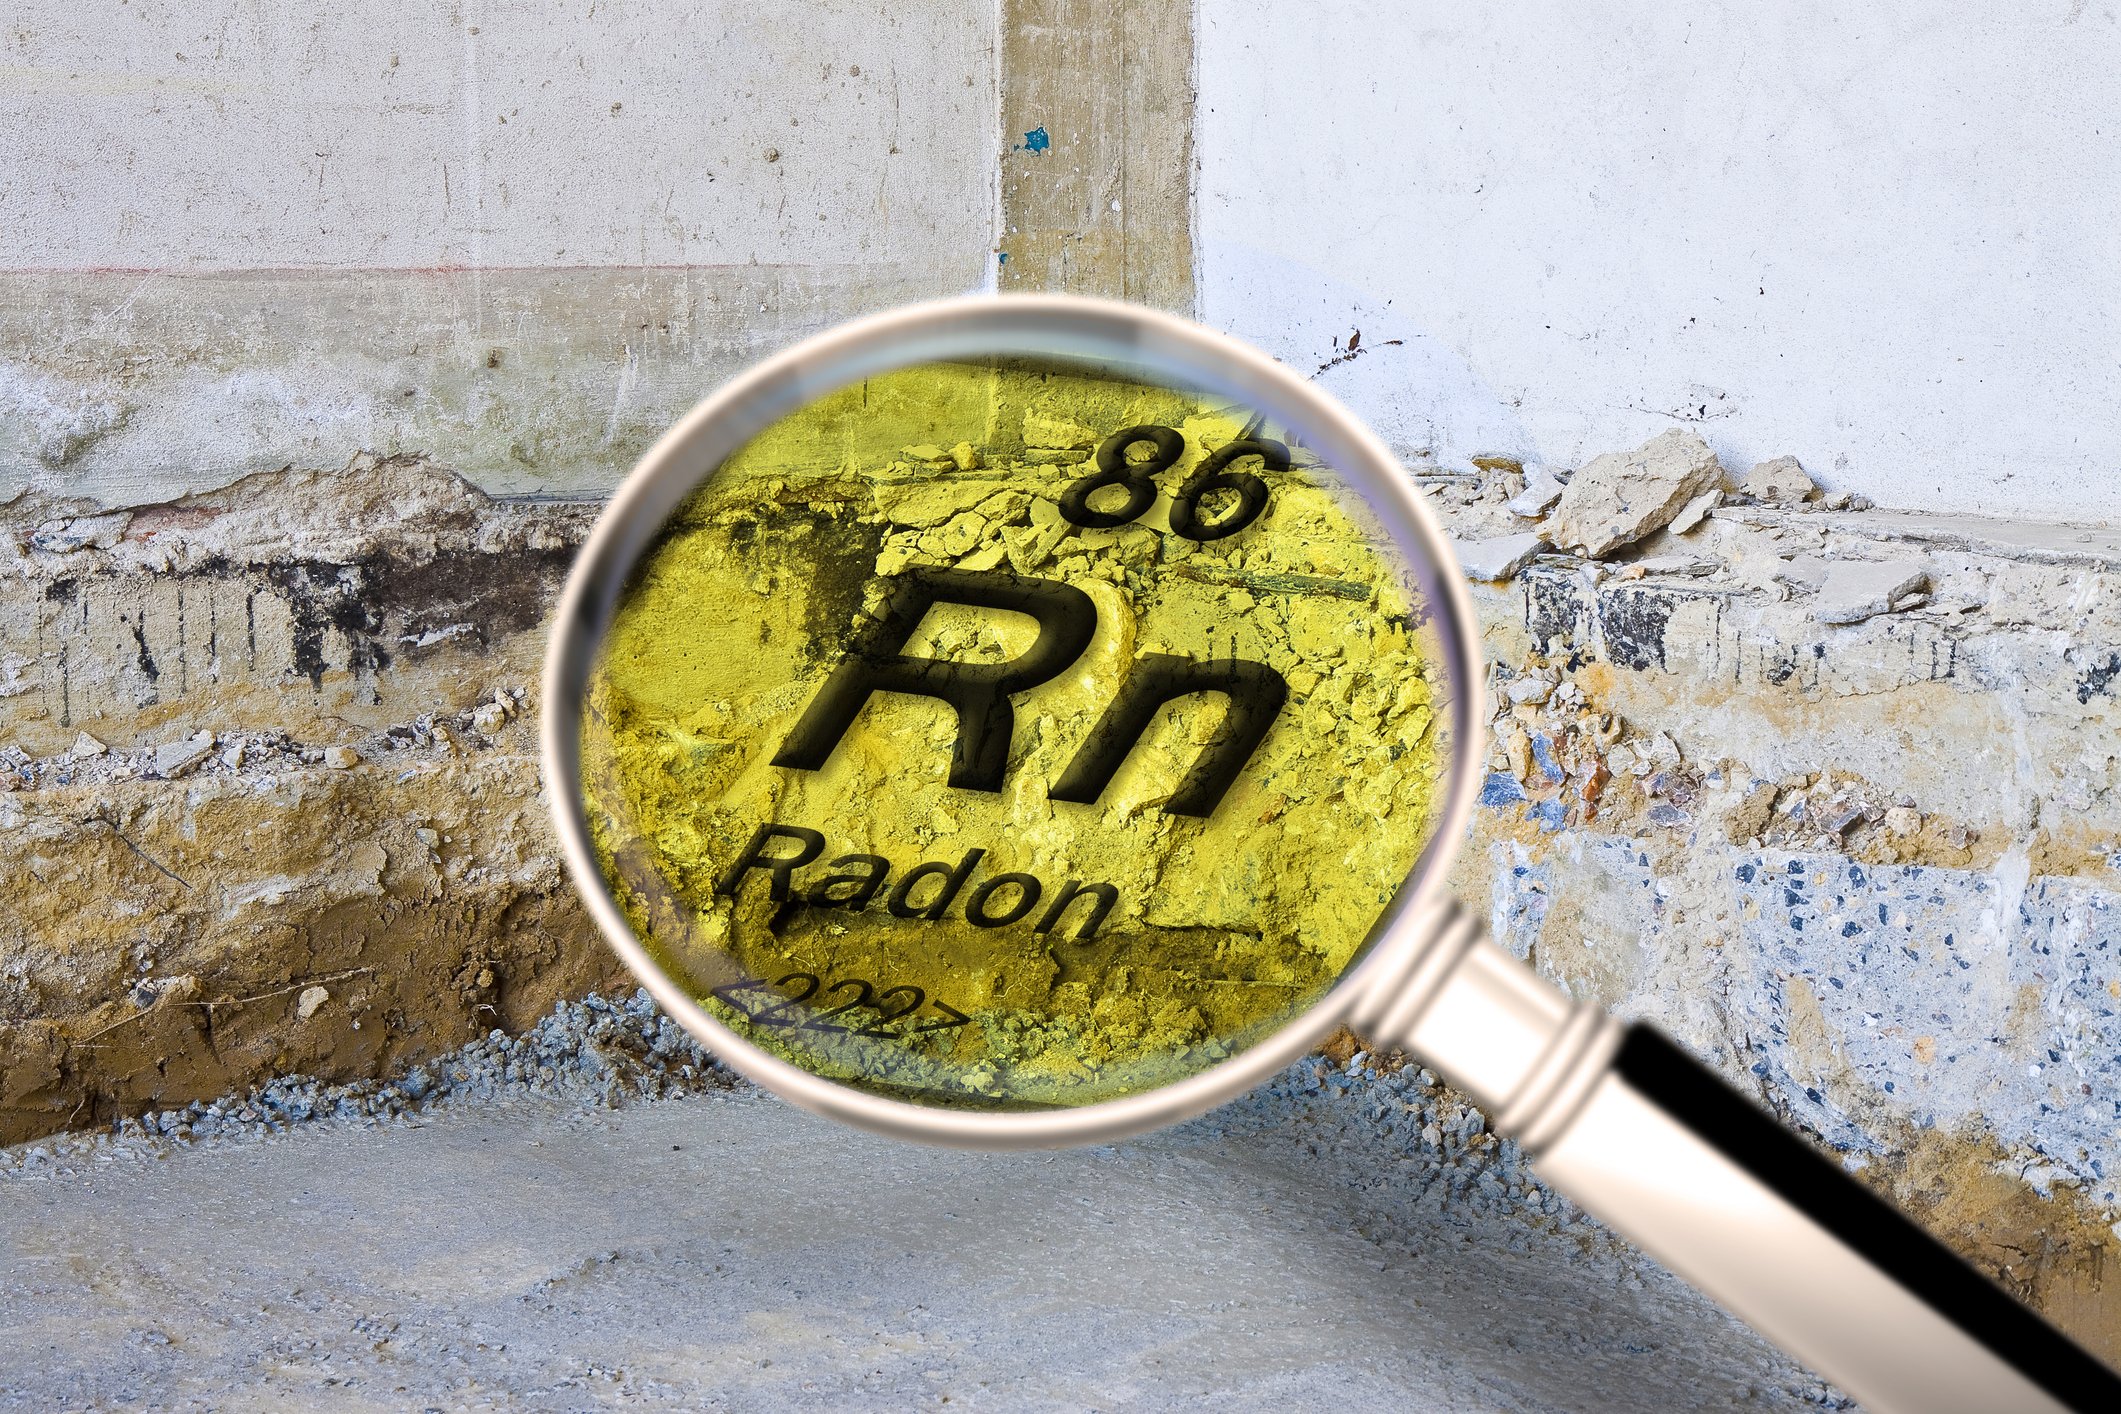 radon testing certification